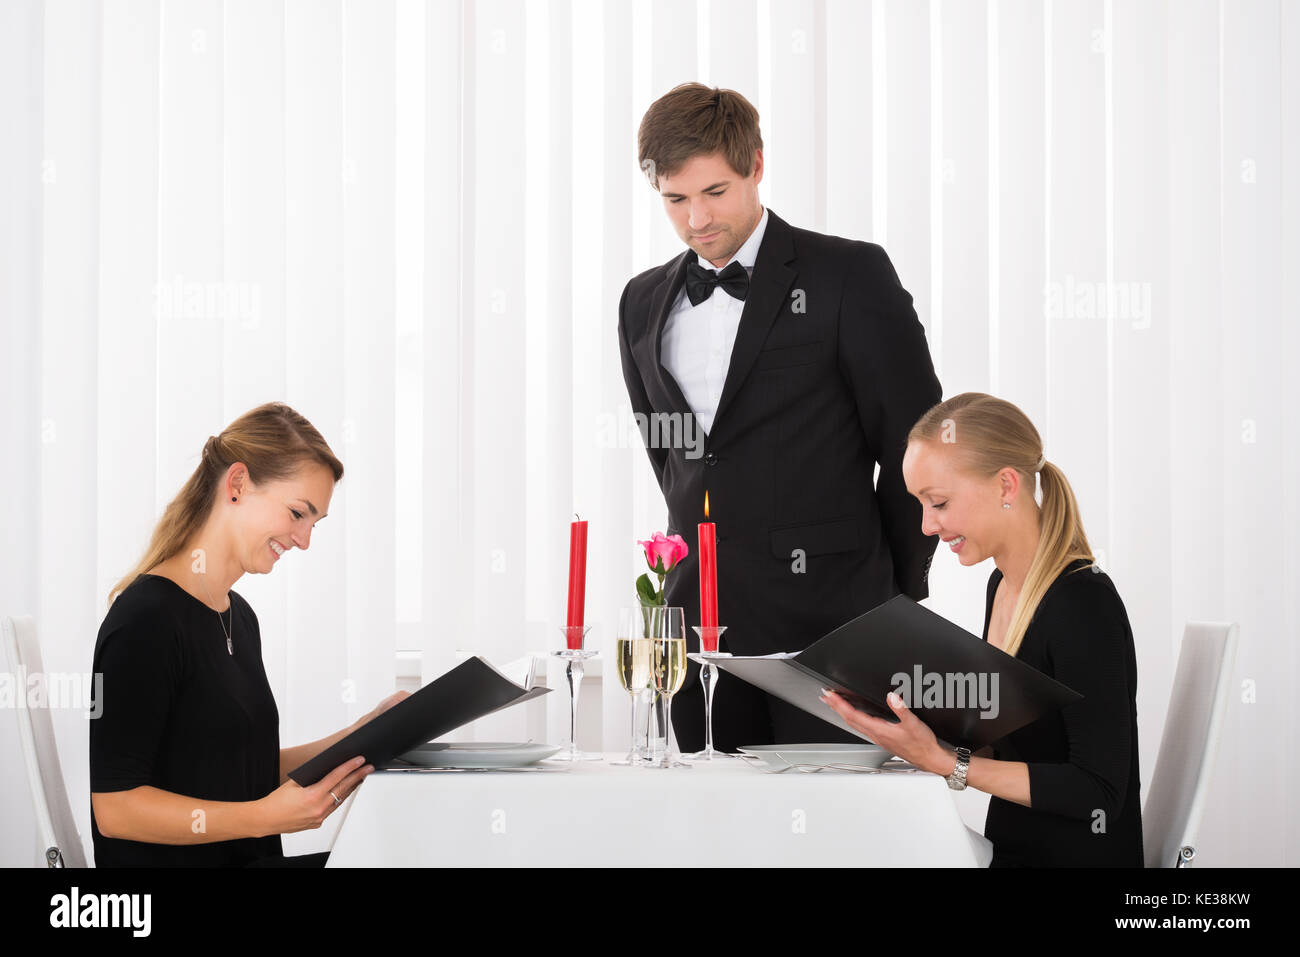 Junge Glücklich weibliche Freunde im Menü im Restaurant mit einem Glas Wein auf Tisch Stockfoto